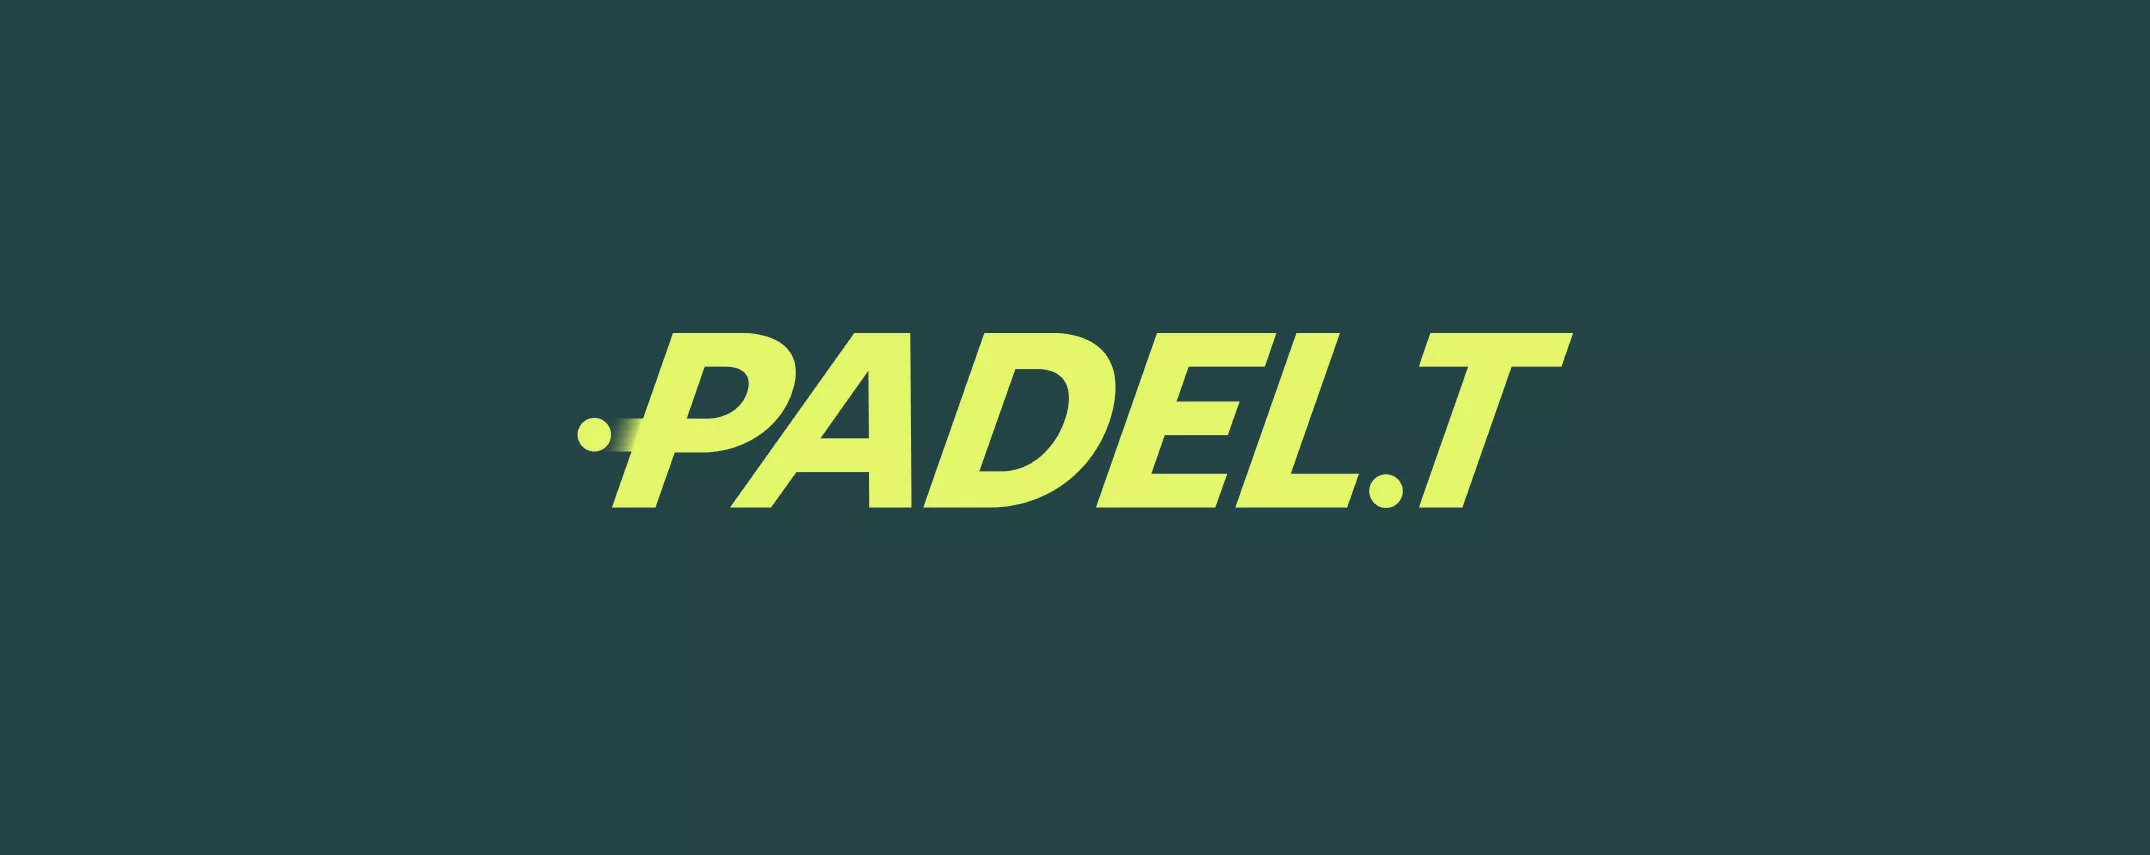 Padel T logo